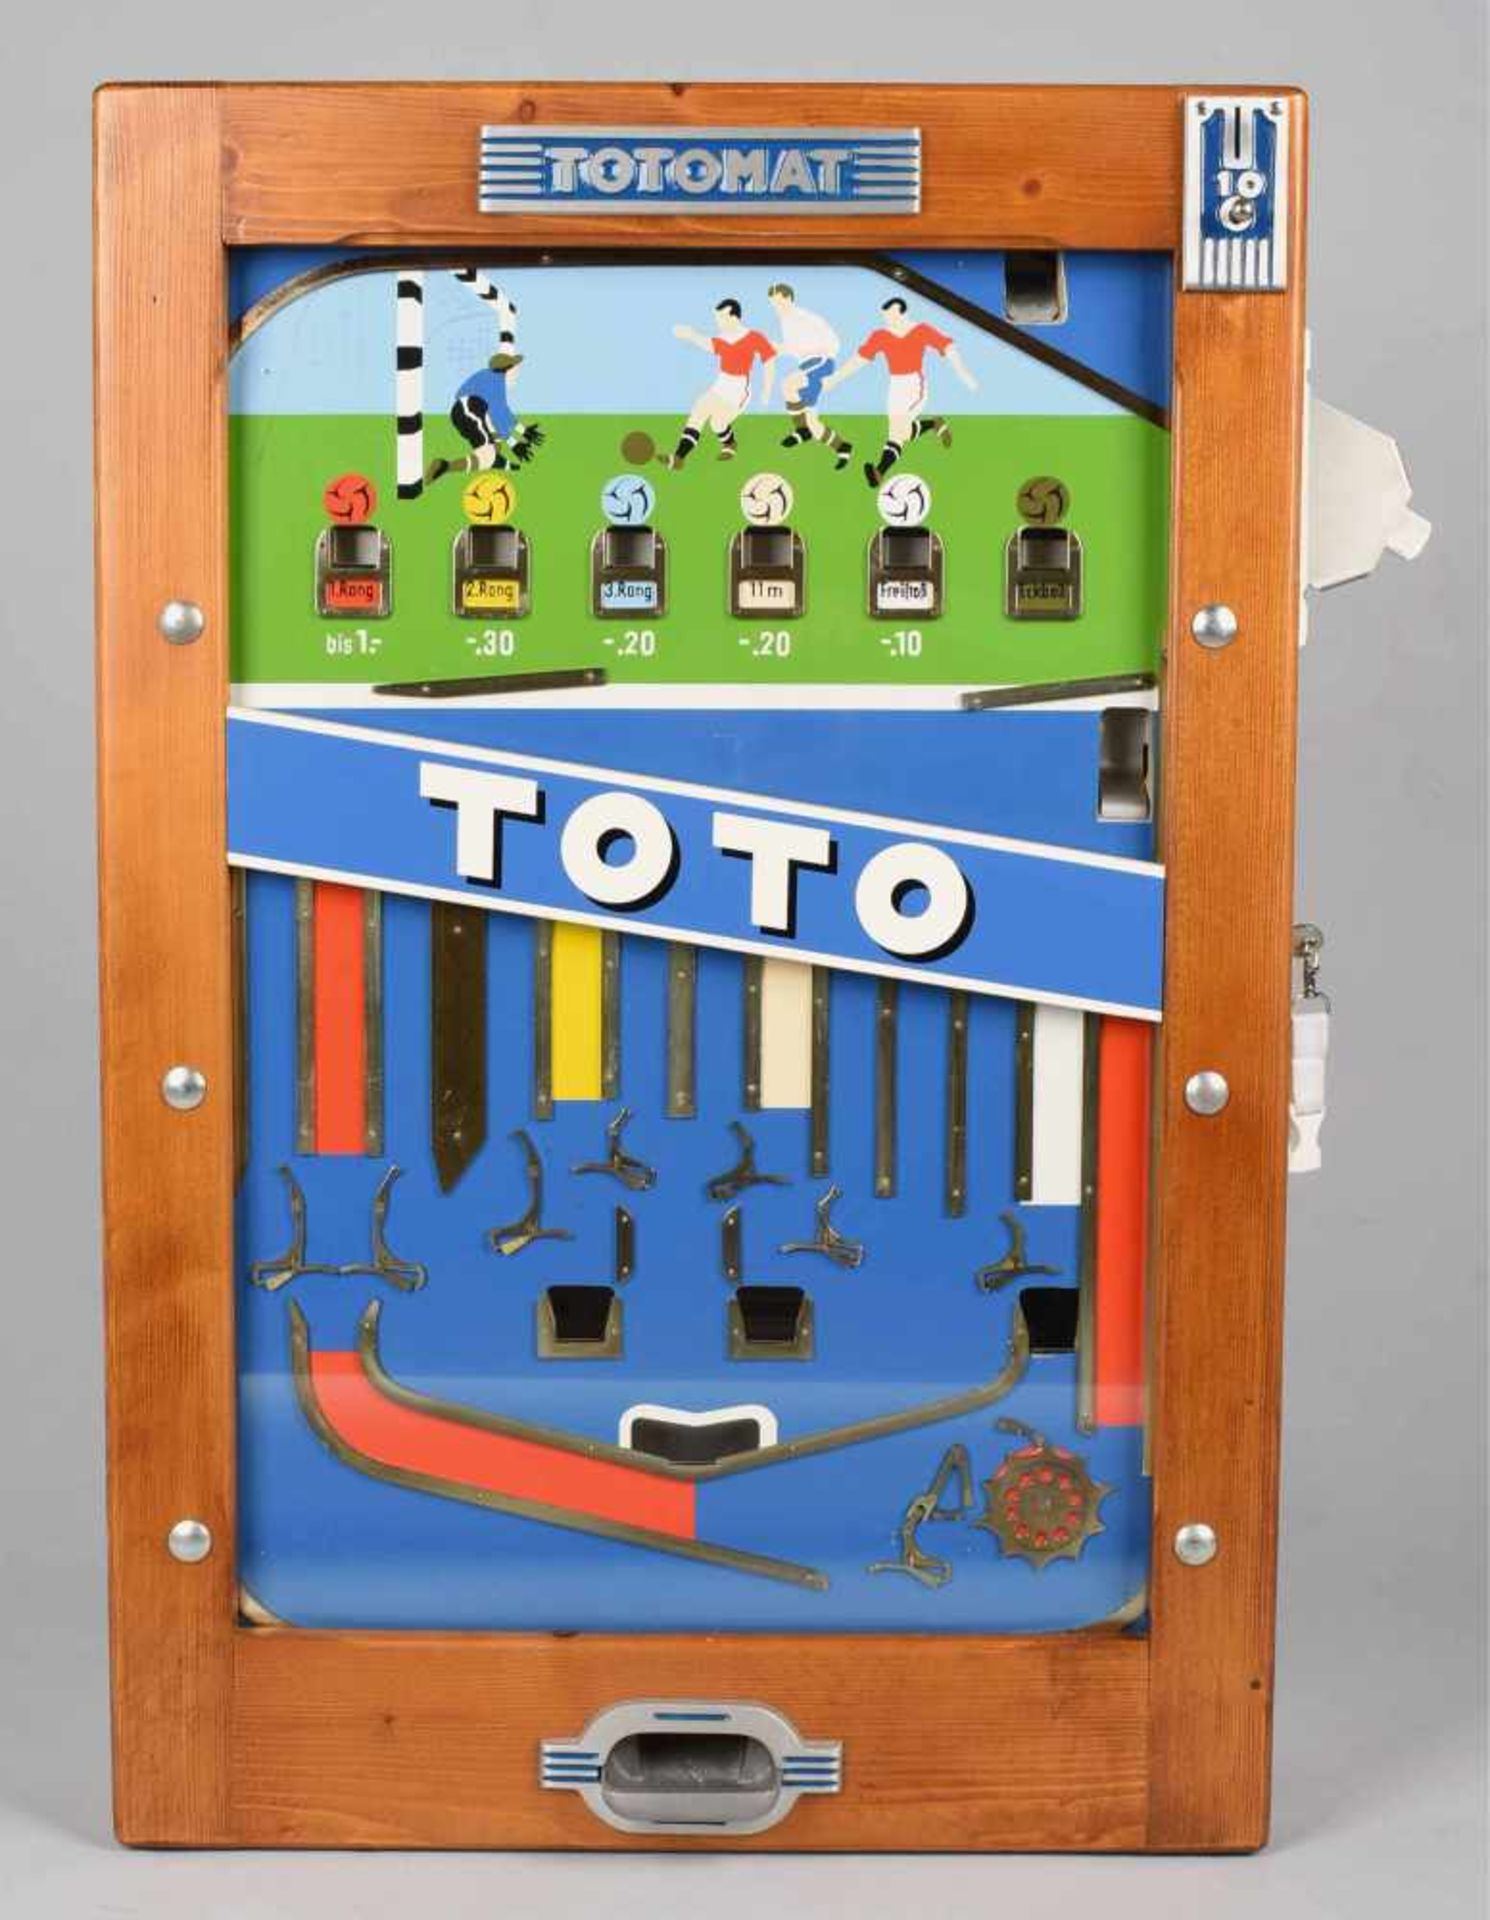 Wandspielautomat "Totomat", Holzgehäuse mit verglaster Front, Münzeinwurf, sehr gute Erhaltung, - Bild 2 aus 2